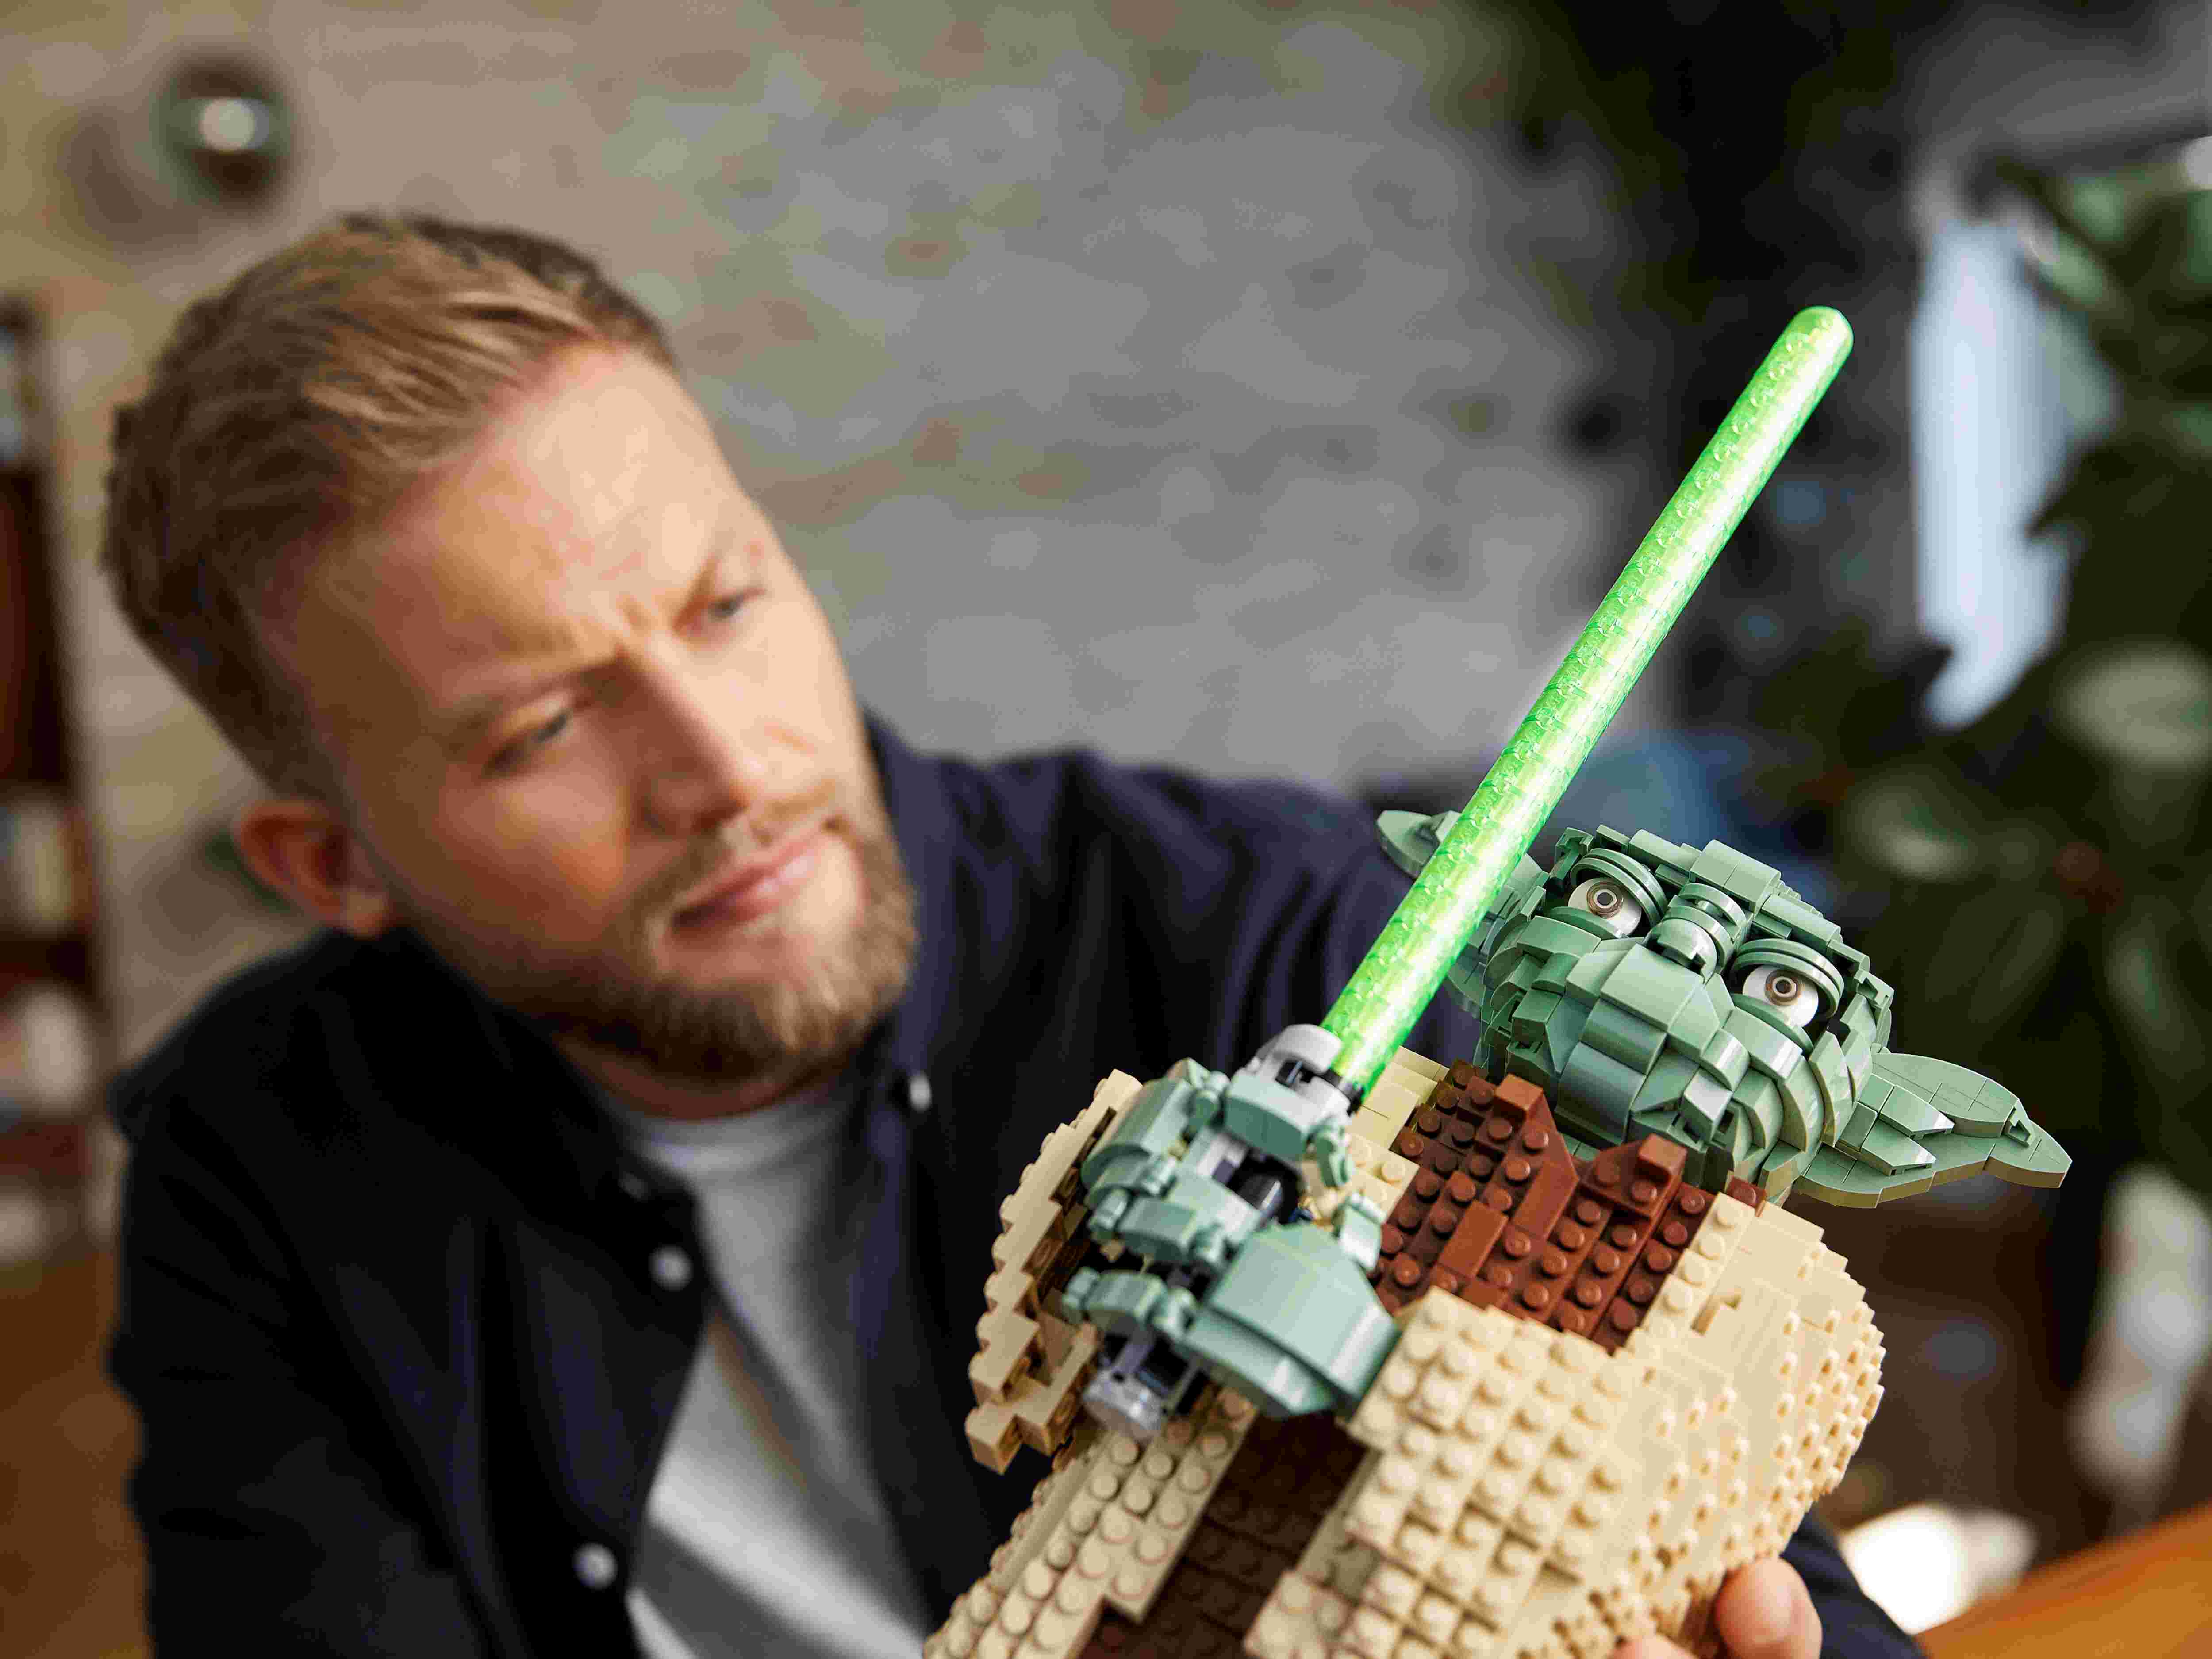 LEGO 75255 Star Wars Yoda, Sammlermodell mit Displayständer